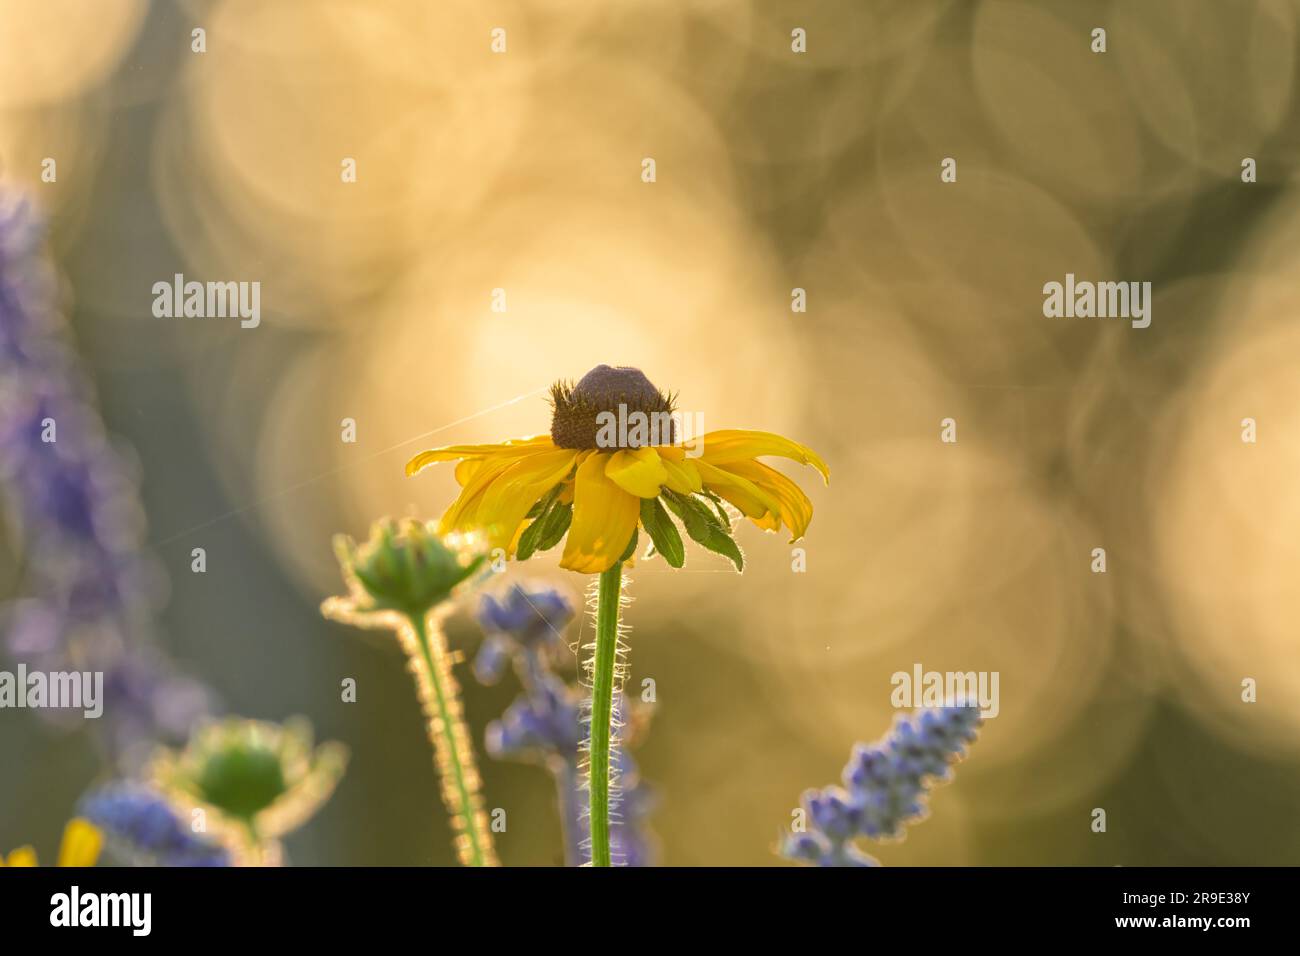 Fleur à yeux noirs de Susan rétro-éclairée par le soleil de fin de printemps en soirée avec quelques fleurs de sauge pourpre autour d'elle Banque D'Images